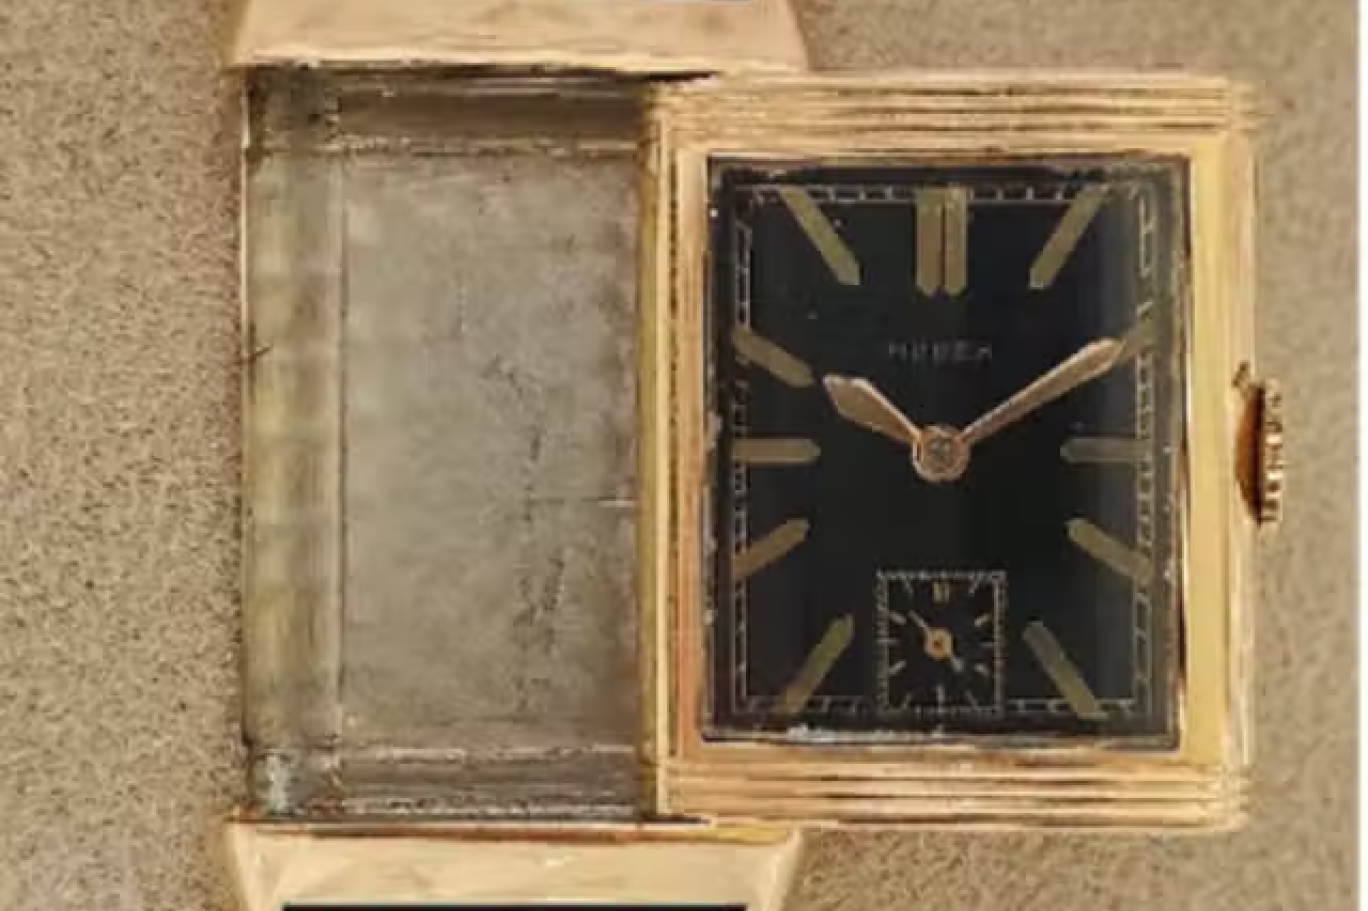 ساعة هتلر بيعت مقابل 1.1 مليون دولار في مزاد مثير للجدل